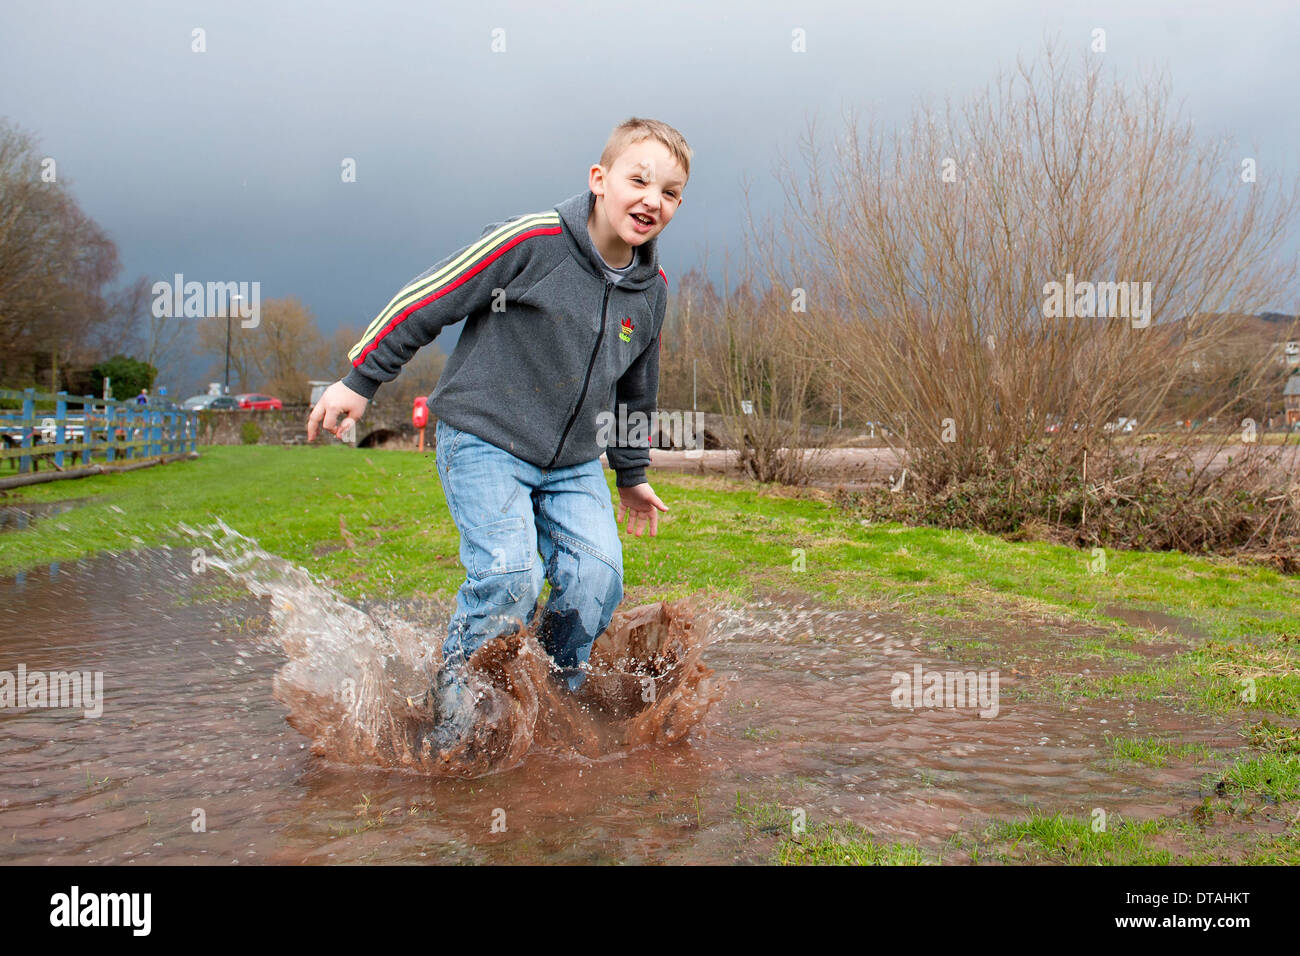 Un giovane ragazzo godendo di un clima umido di saltare in una pozzanghera e spruzzi d'acqua. Foto Stock